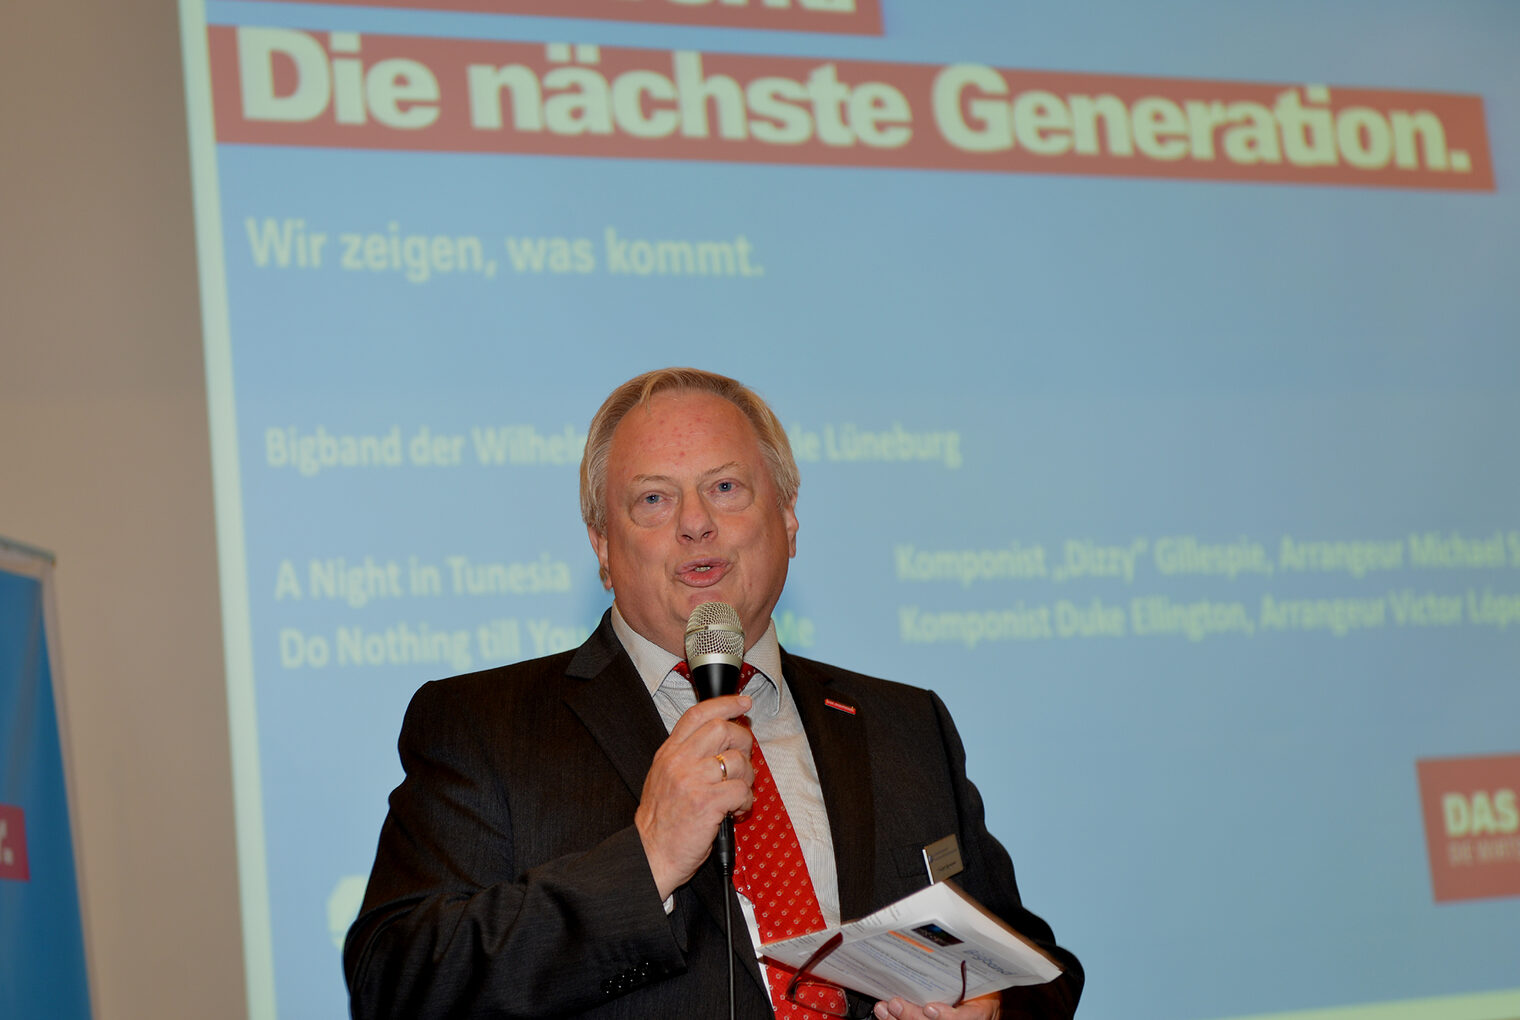 Günter Neumann, Leiter Berufliche Bildung bei der Handwerkskammer, führte durch den Abend.